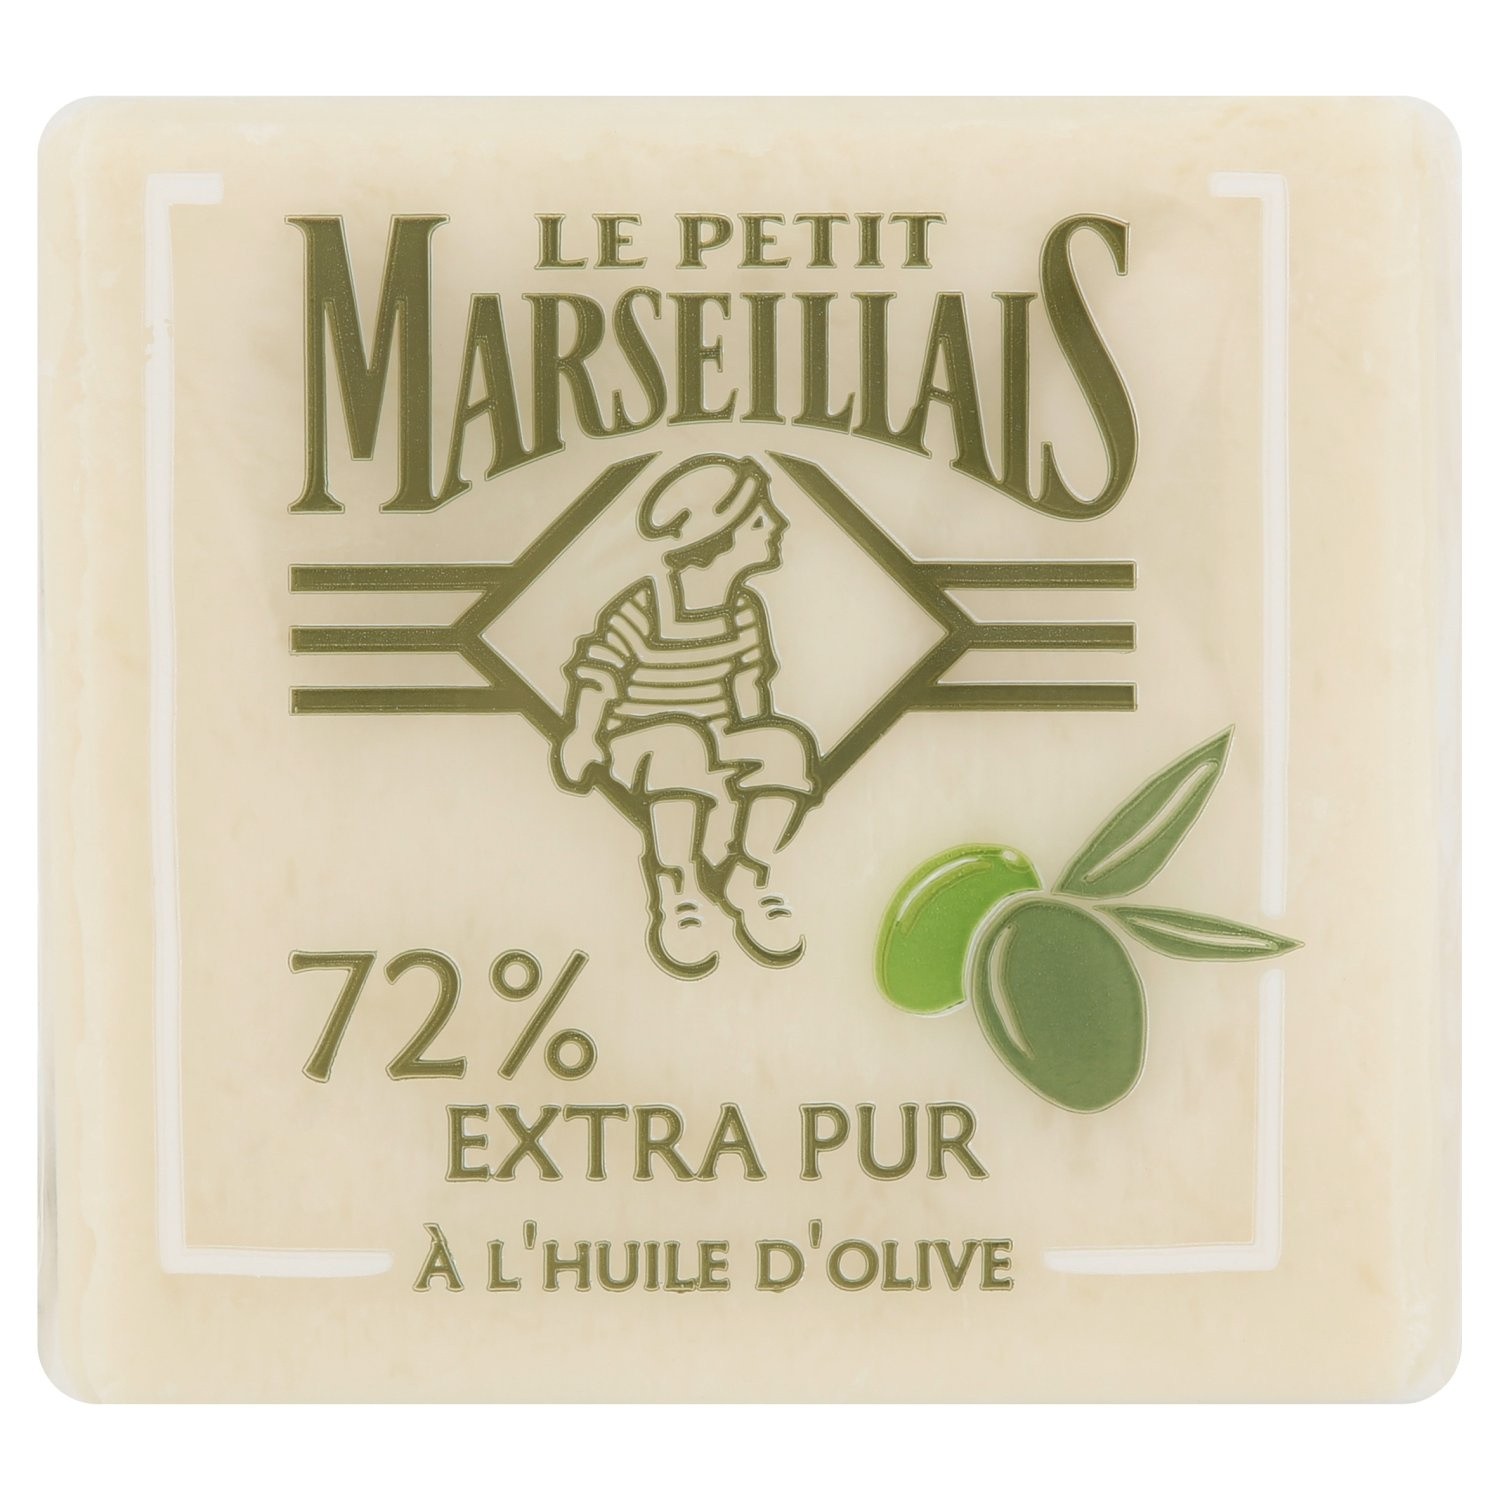 Le Petit Marseillais Marseille's soap with Olive soap 72% pure soap 200g